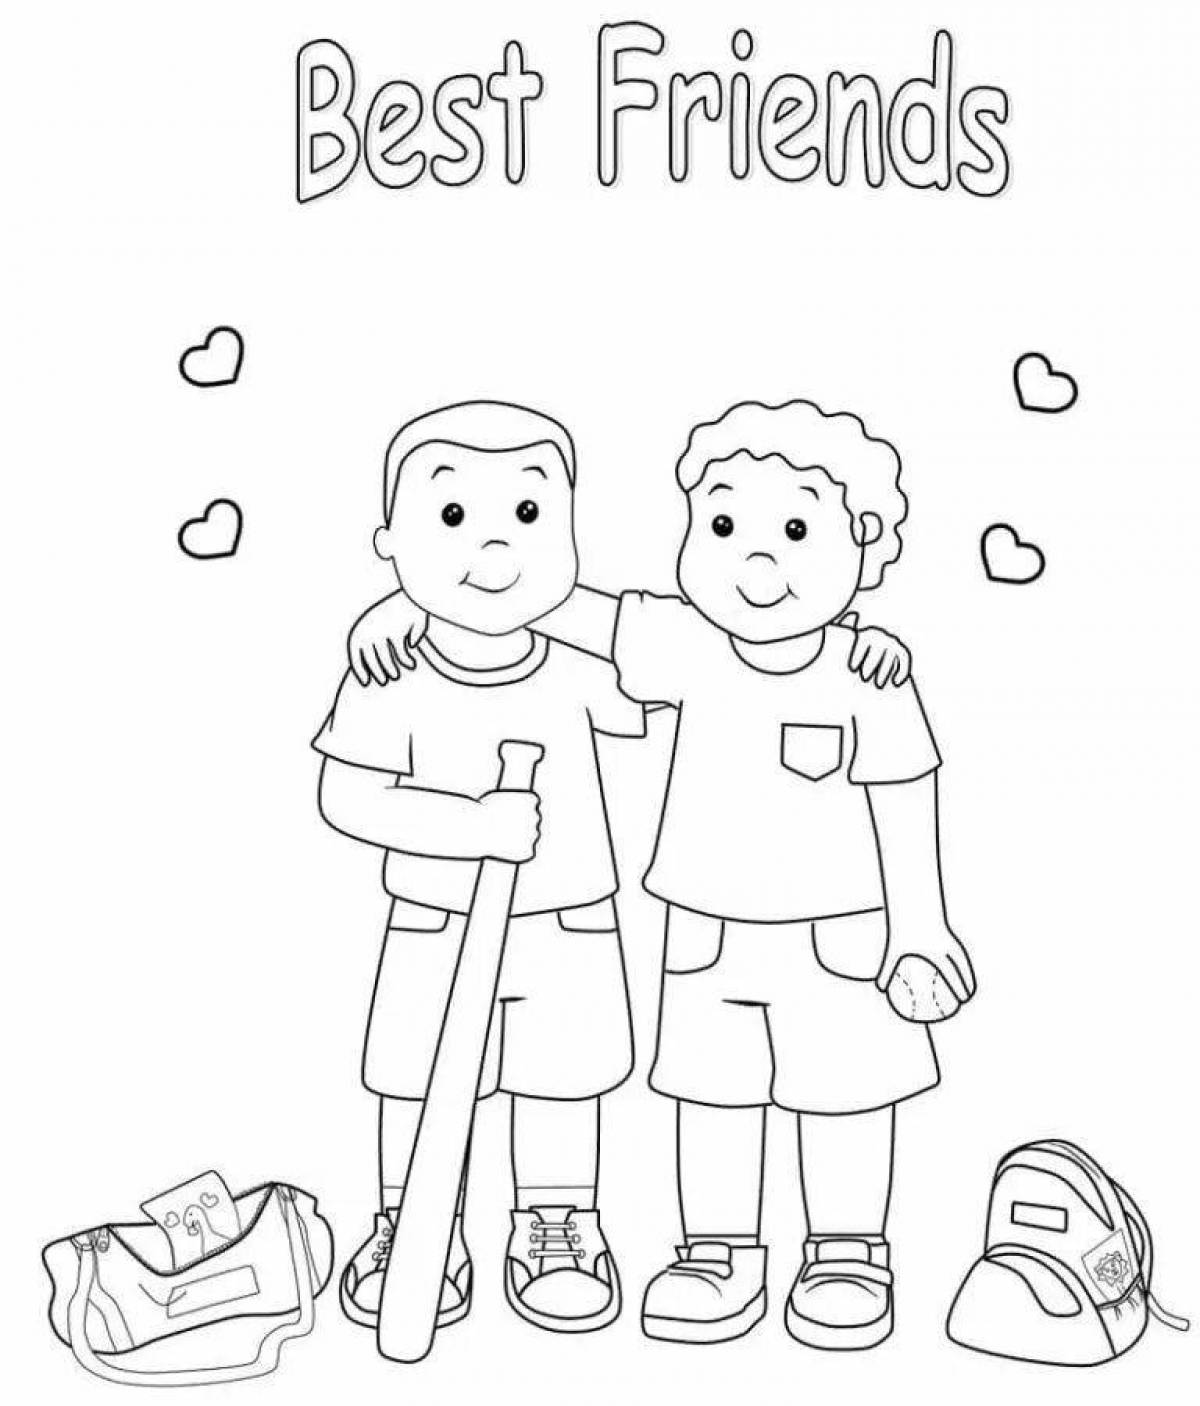 Распечатать лучшие друзья. Раскраска друзья. Раскраска Дружба. Картинки о дружбе раскраски. Мои друзья раскраска для детей.